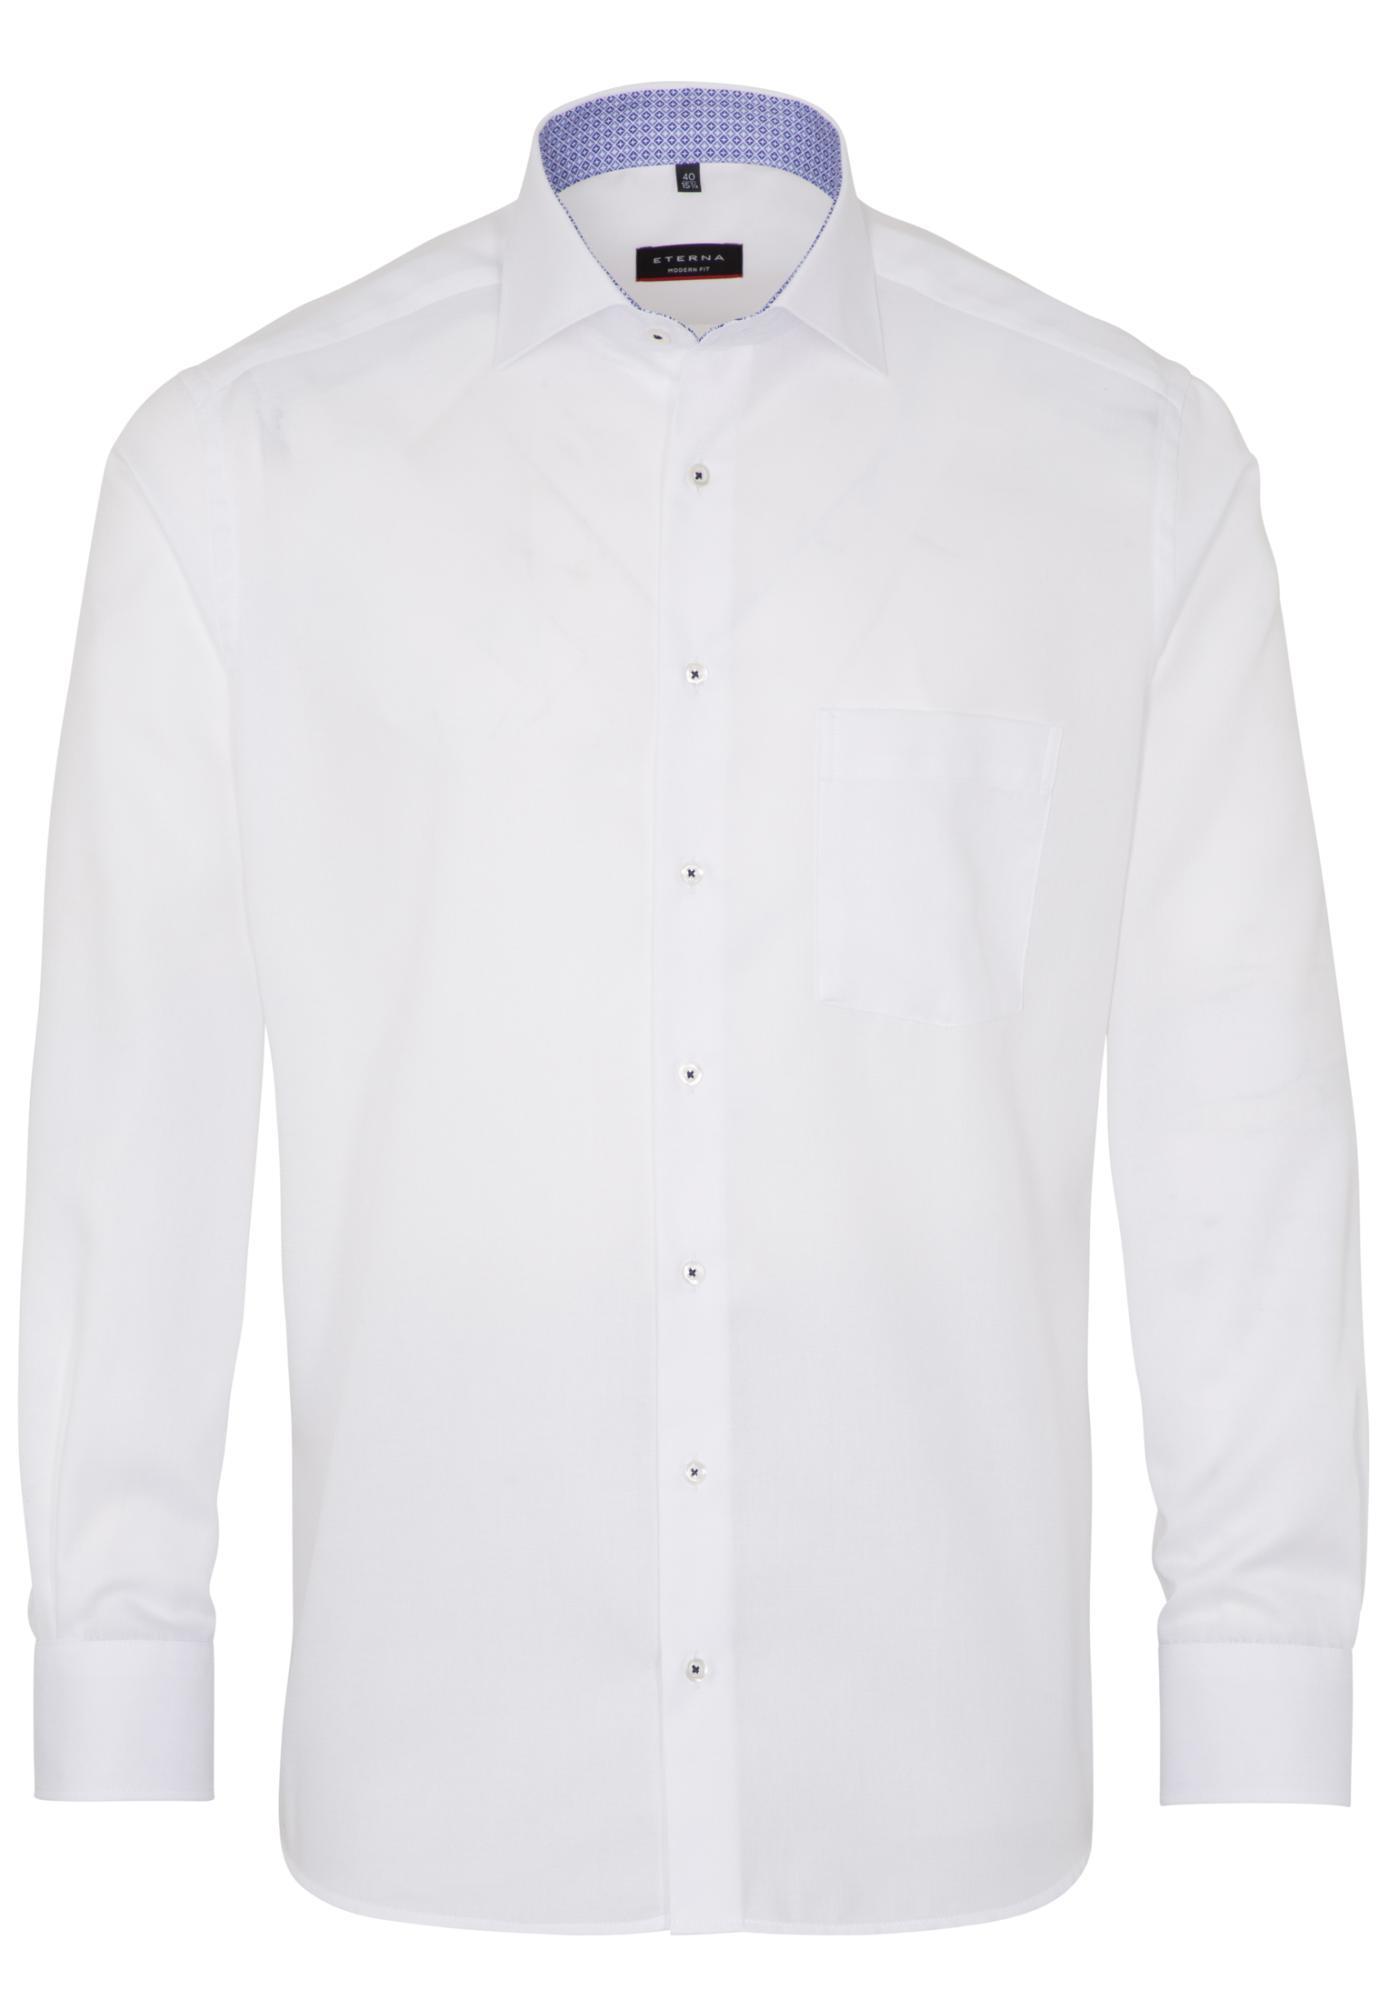 Мужская рубашка ETERNA, белая, цвет белый, размер 58 - фото 1